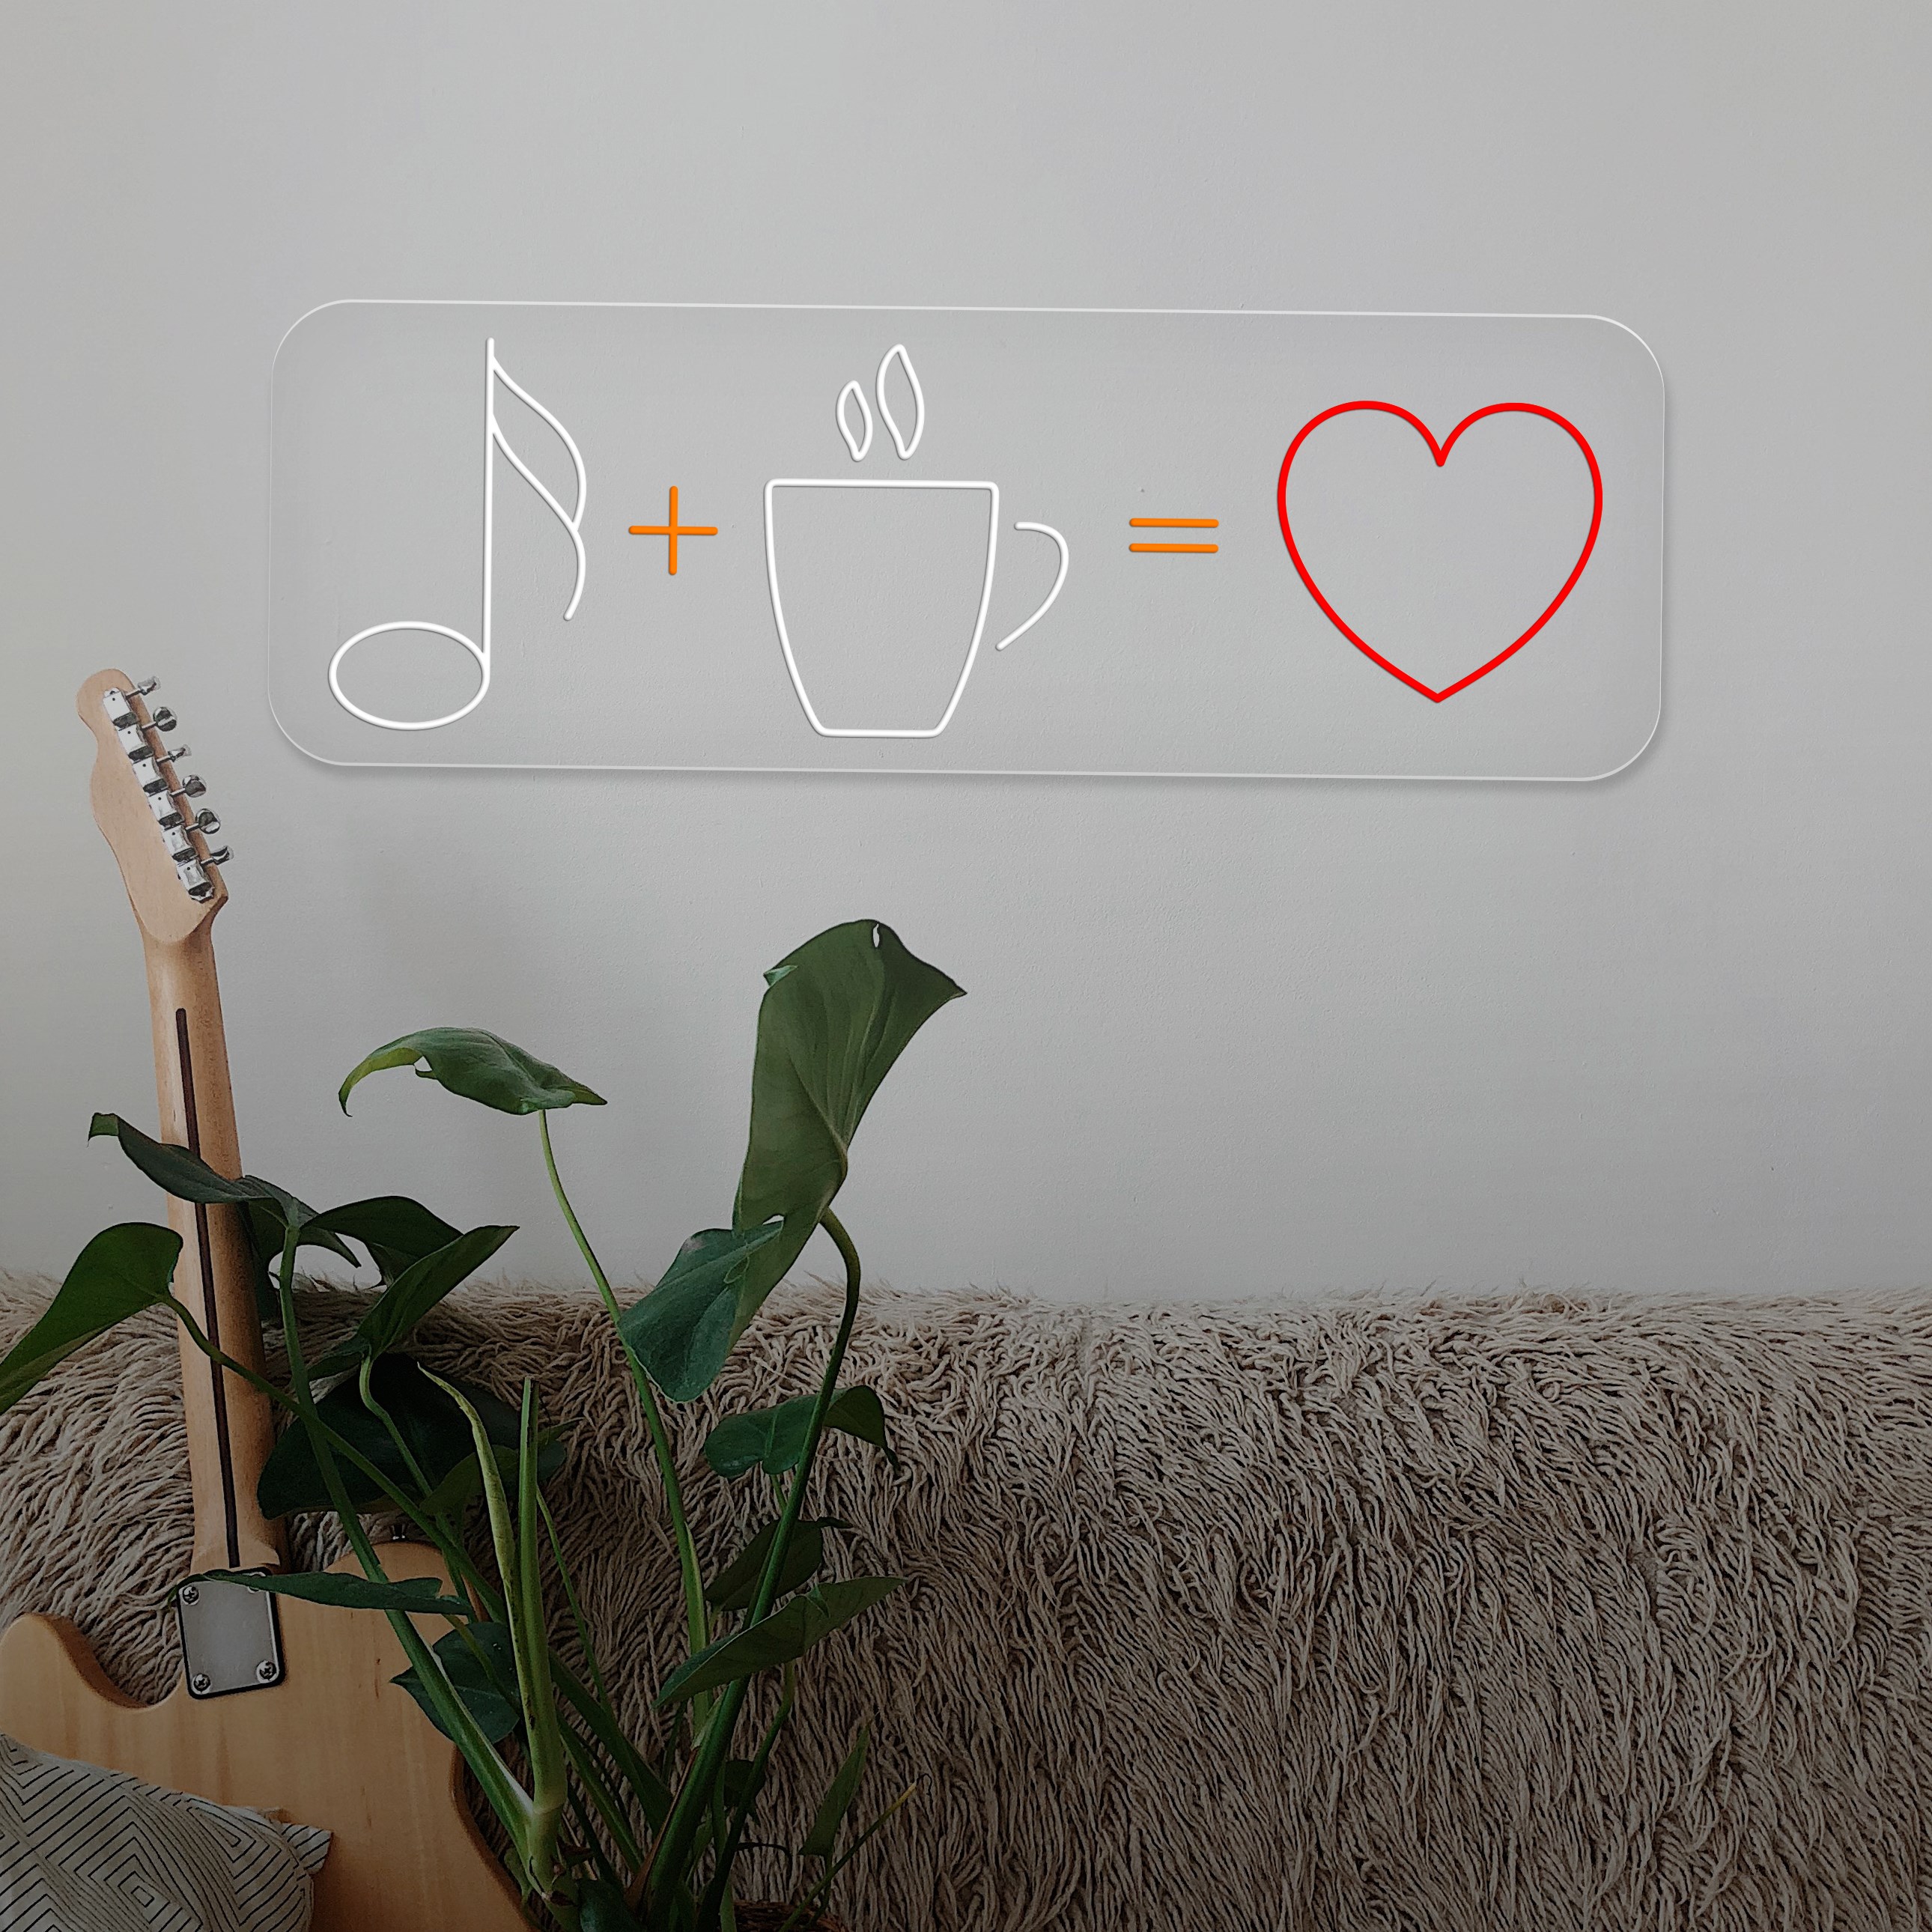 Immagine di Neon "Coffee + Music = Love"